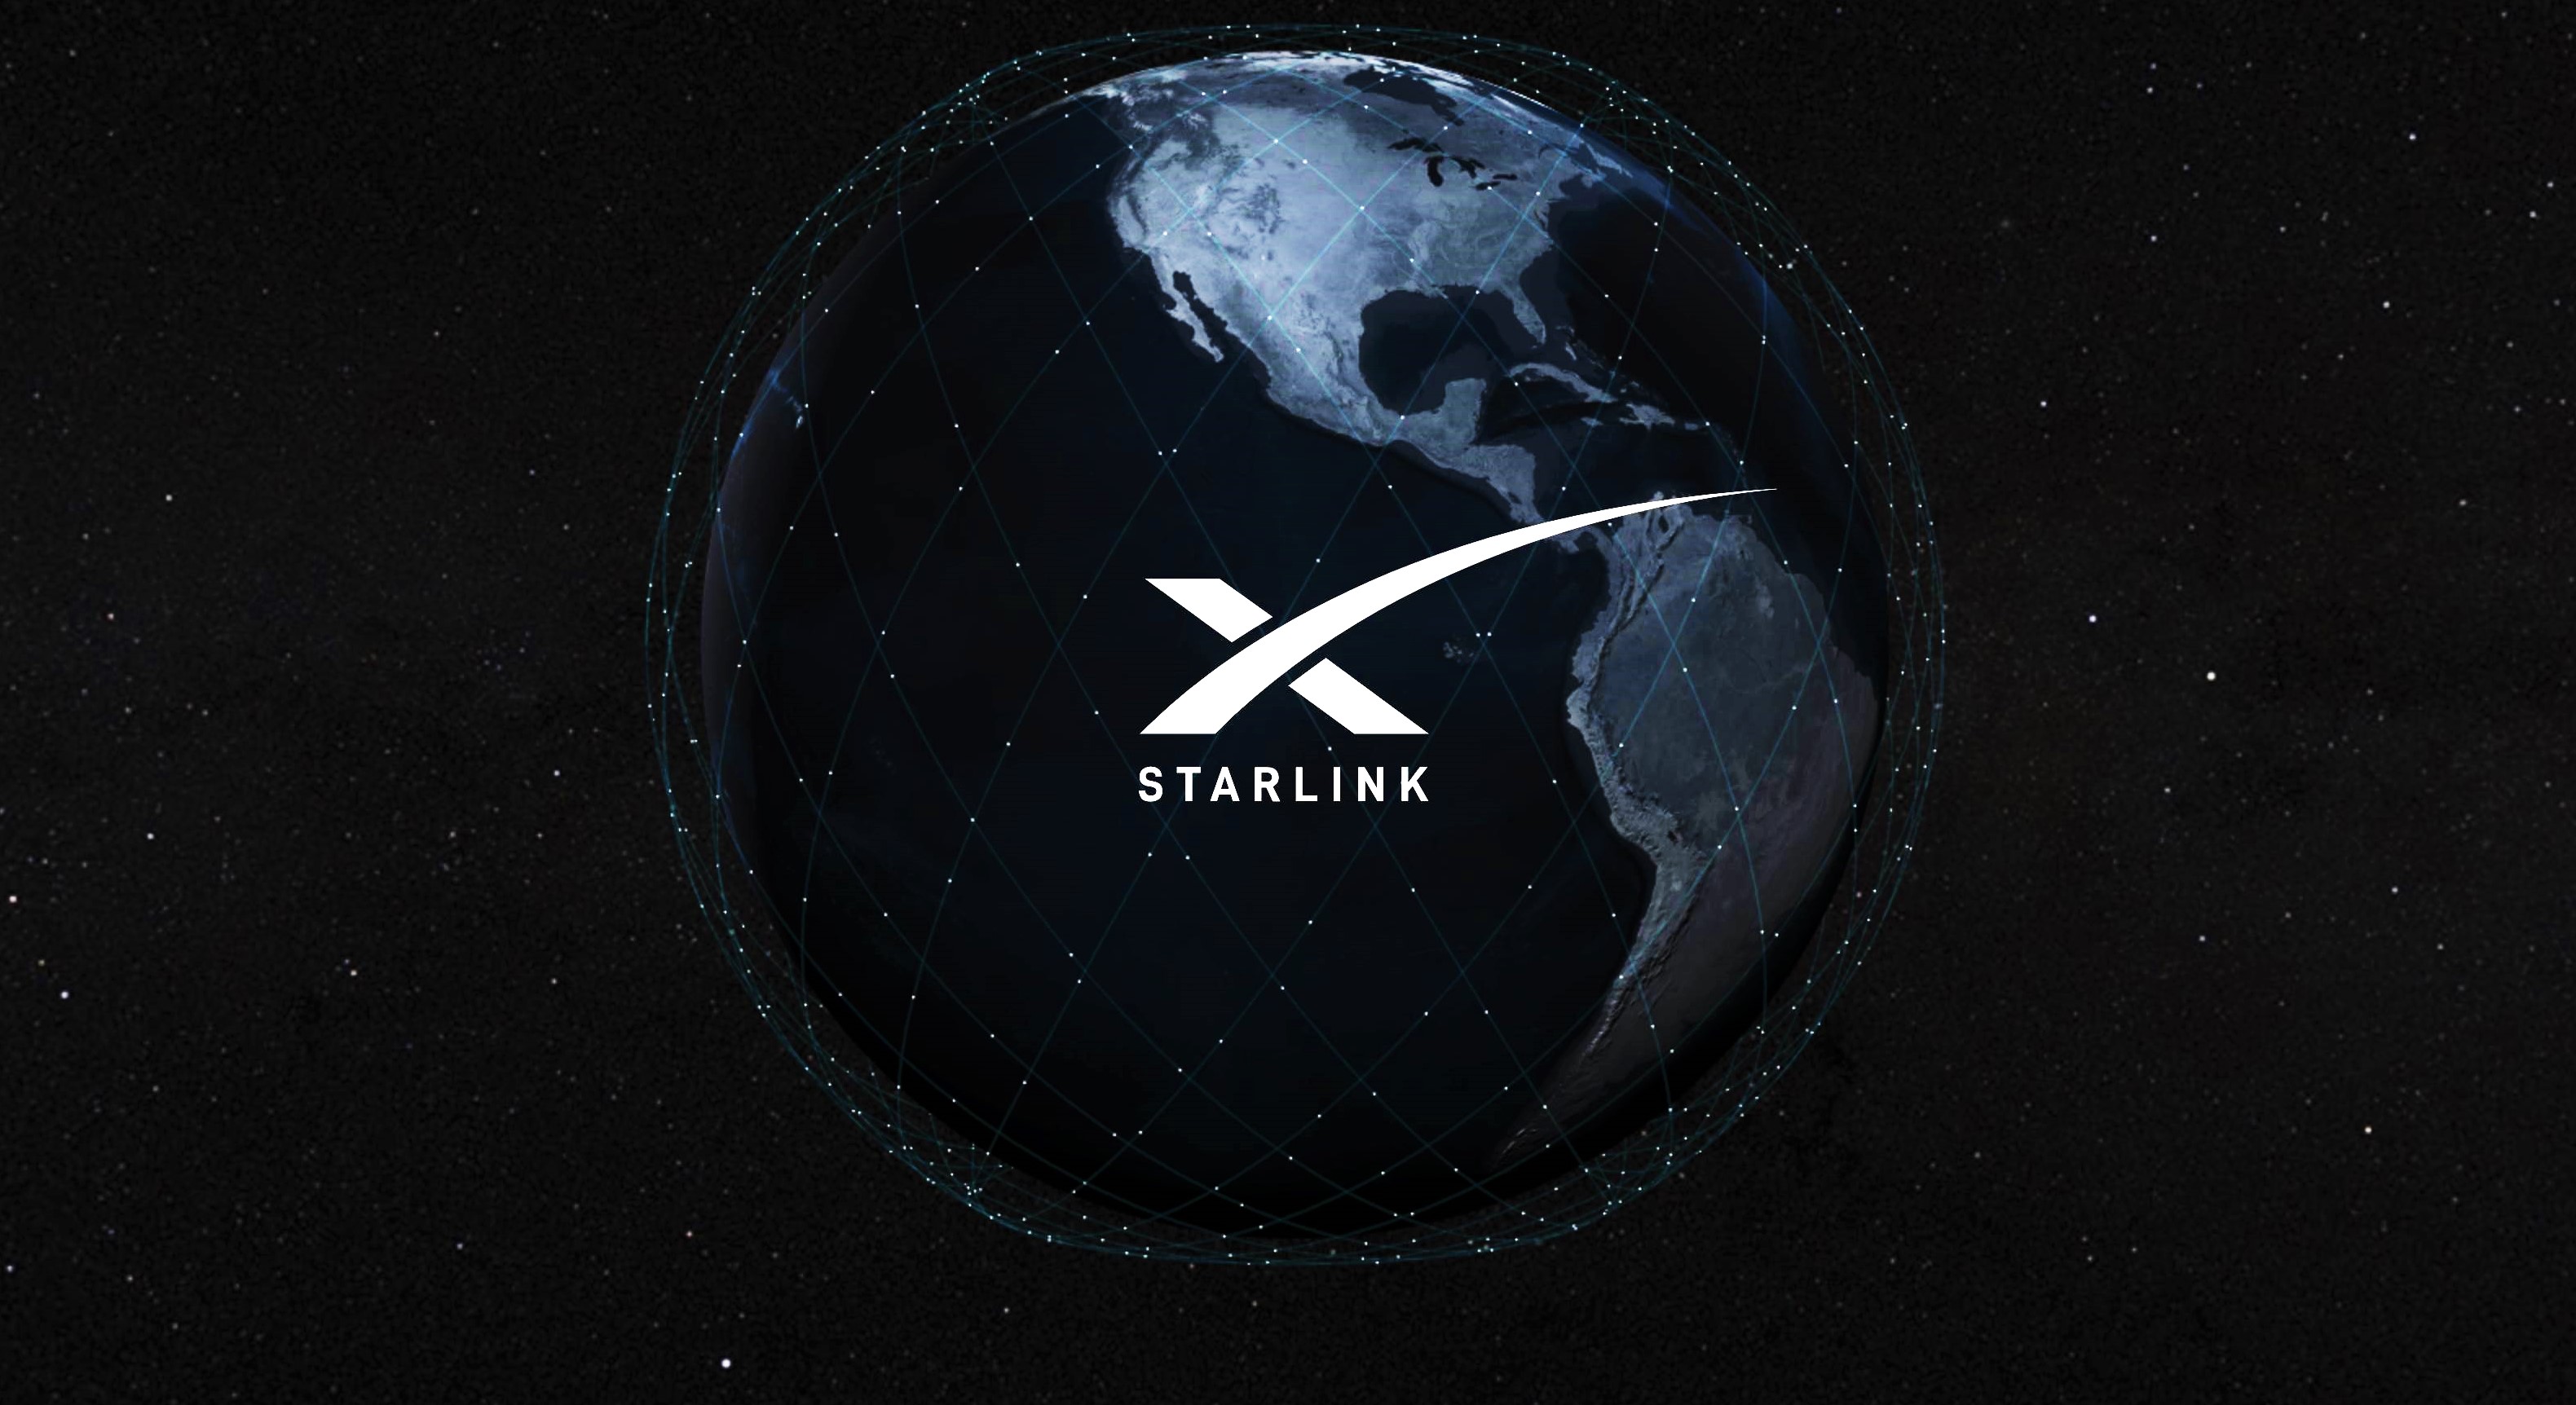 【今天整了啥活】0816 Ubuntu 18.04.5 和 16.04.7 LTS 发布 SpaceX Starlink新消息